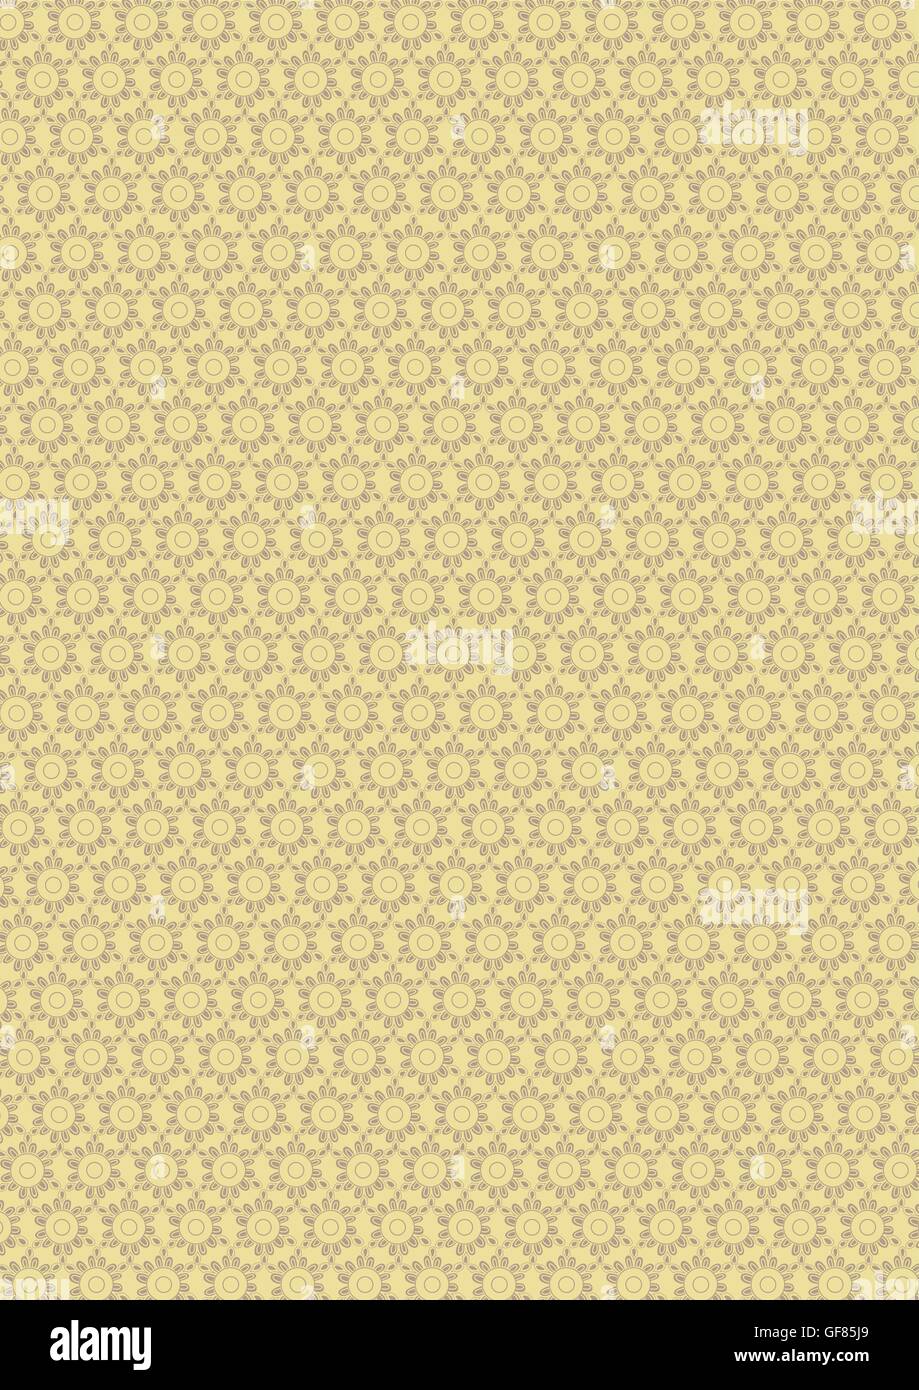 Gold-Gelb und weiß Muster Textur Hintergrund Vektor-islamischen geometrischen Muster Hintergrund design Stock Vektor